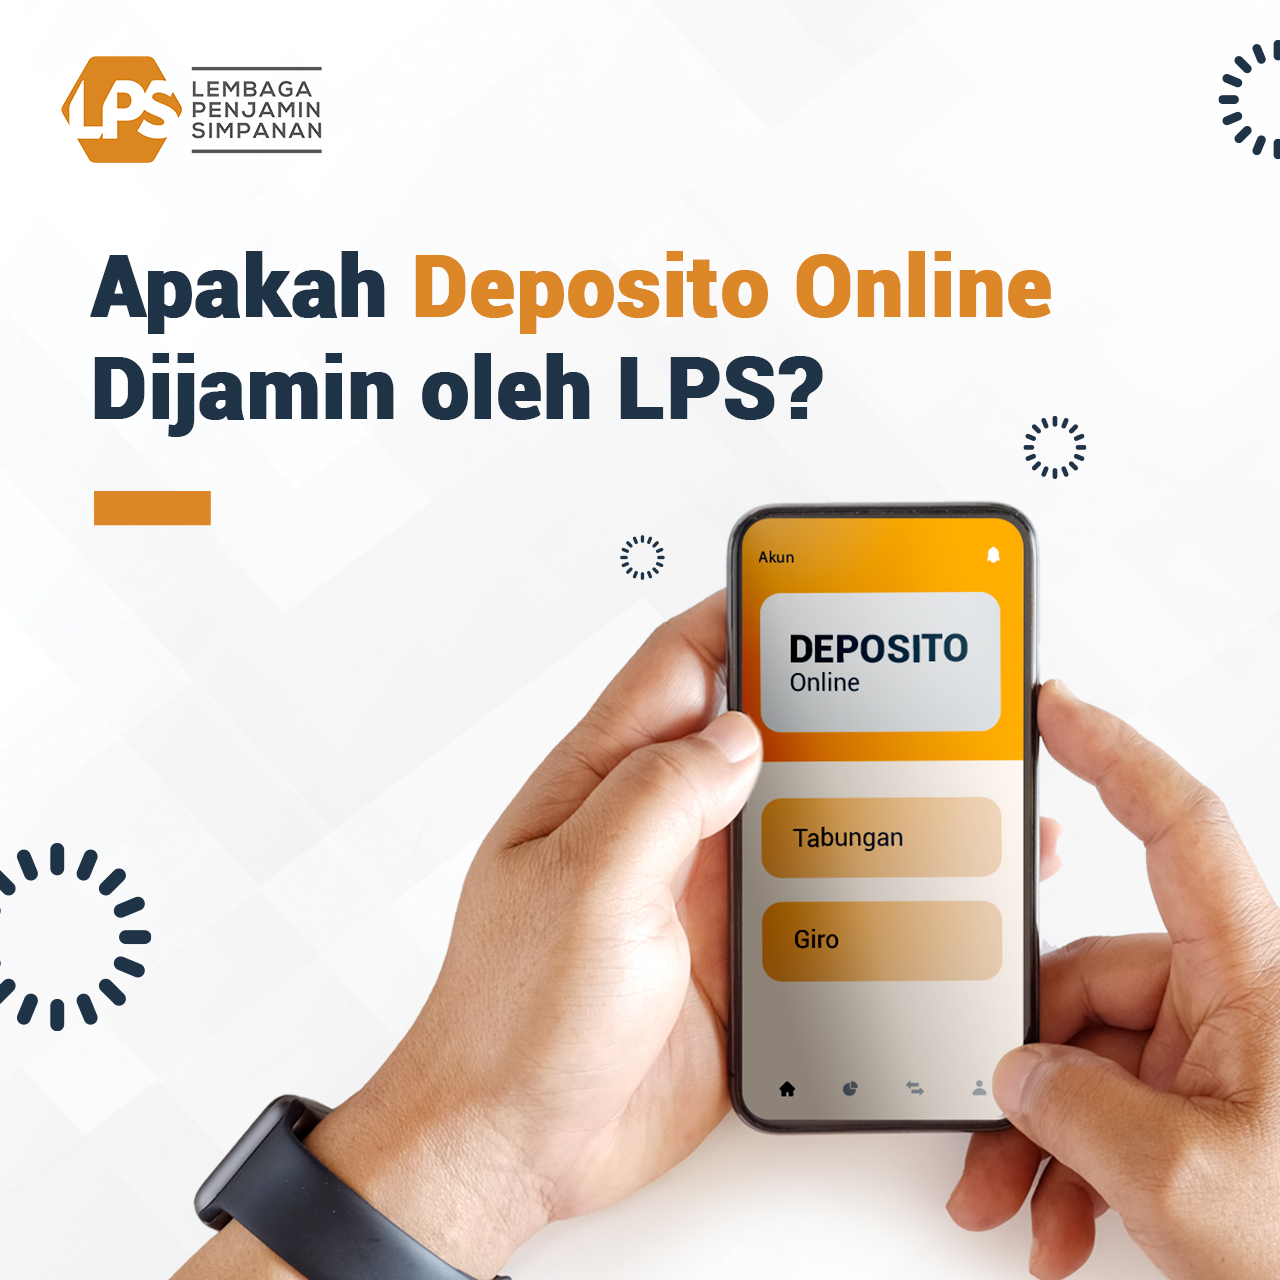 Compra conferencia Promover LPS RI / IDIC on Twitter: "Deposito online merupakan produk deposito  berbasis digital. Untuk memiliki rekening deposito online, nasabah tidak  perlu datang ke bank sehingga lebih praktis dan hemat waktu. Menabung  sekaligus